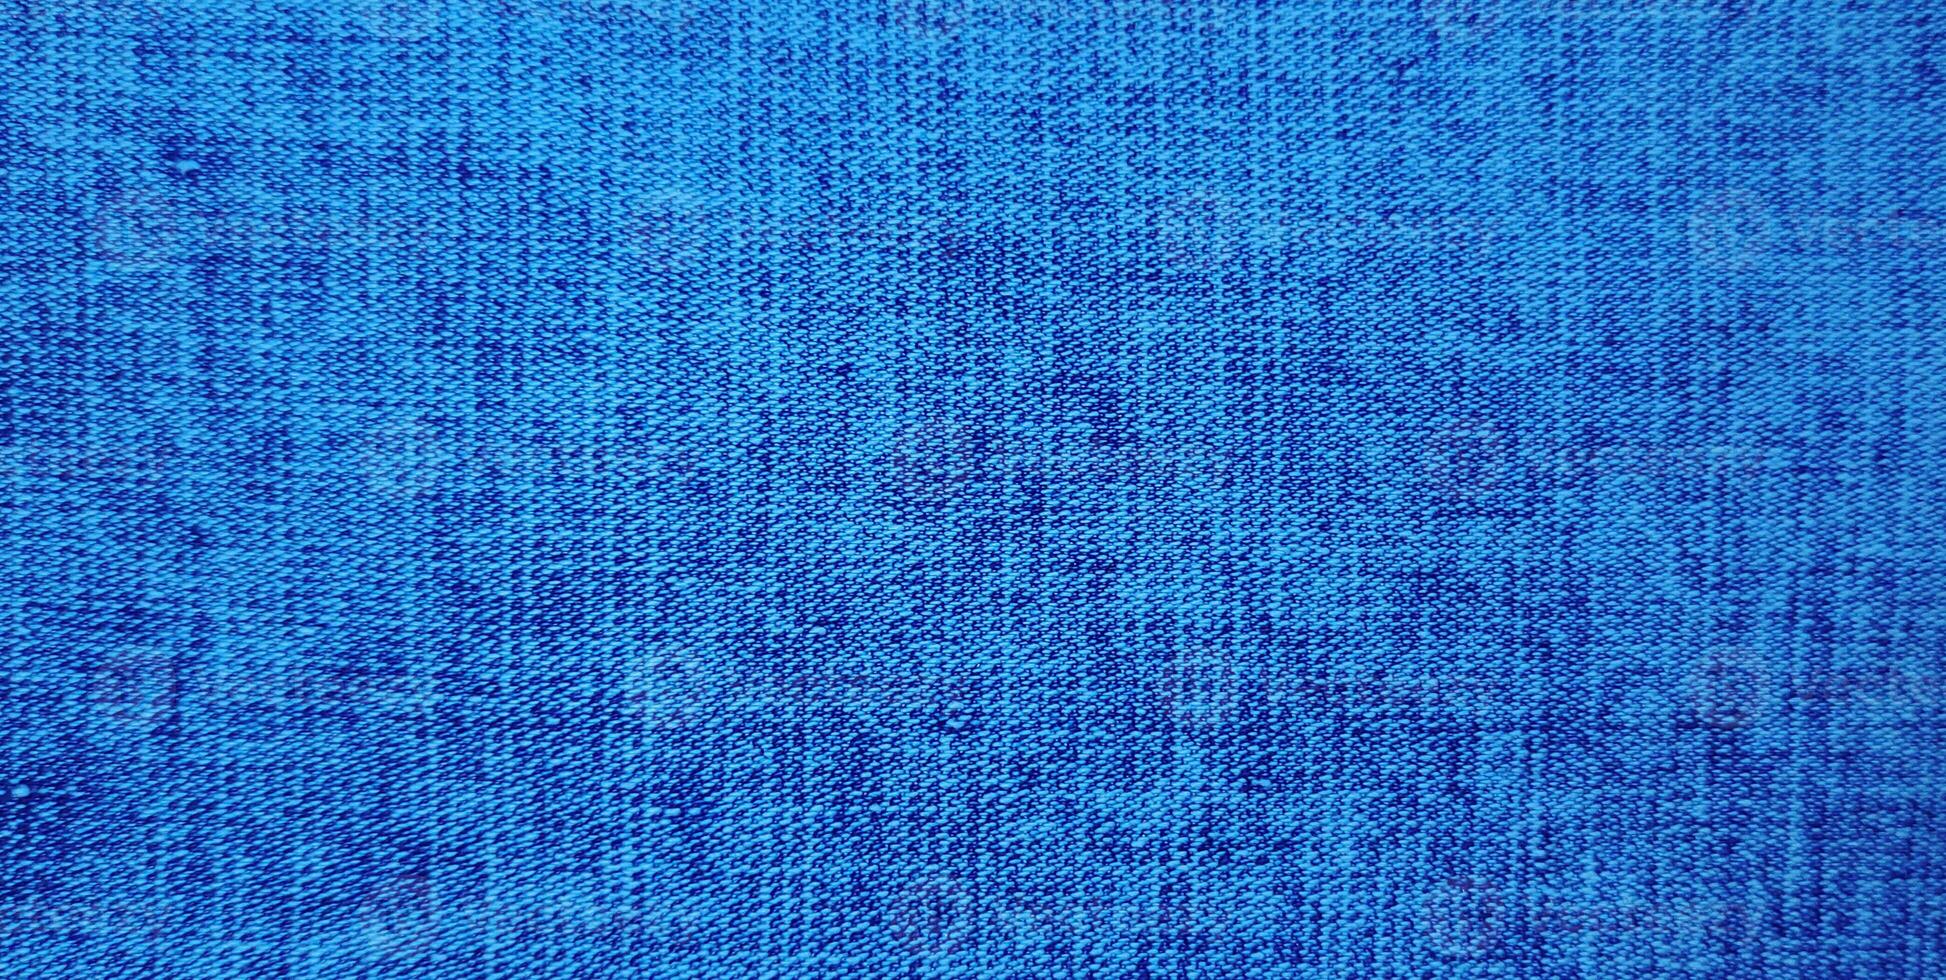 licht blauw kleur abstract denim jasje, wijnoogst denim jeans kleding en kleding stof dichtbij omhoog macro foto voor achtergrond